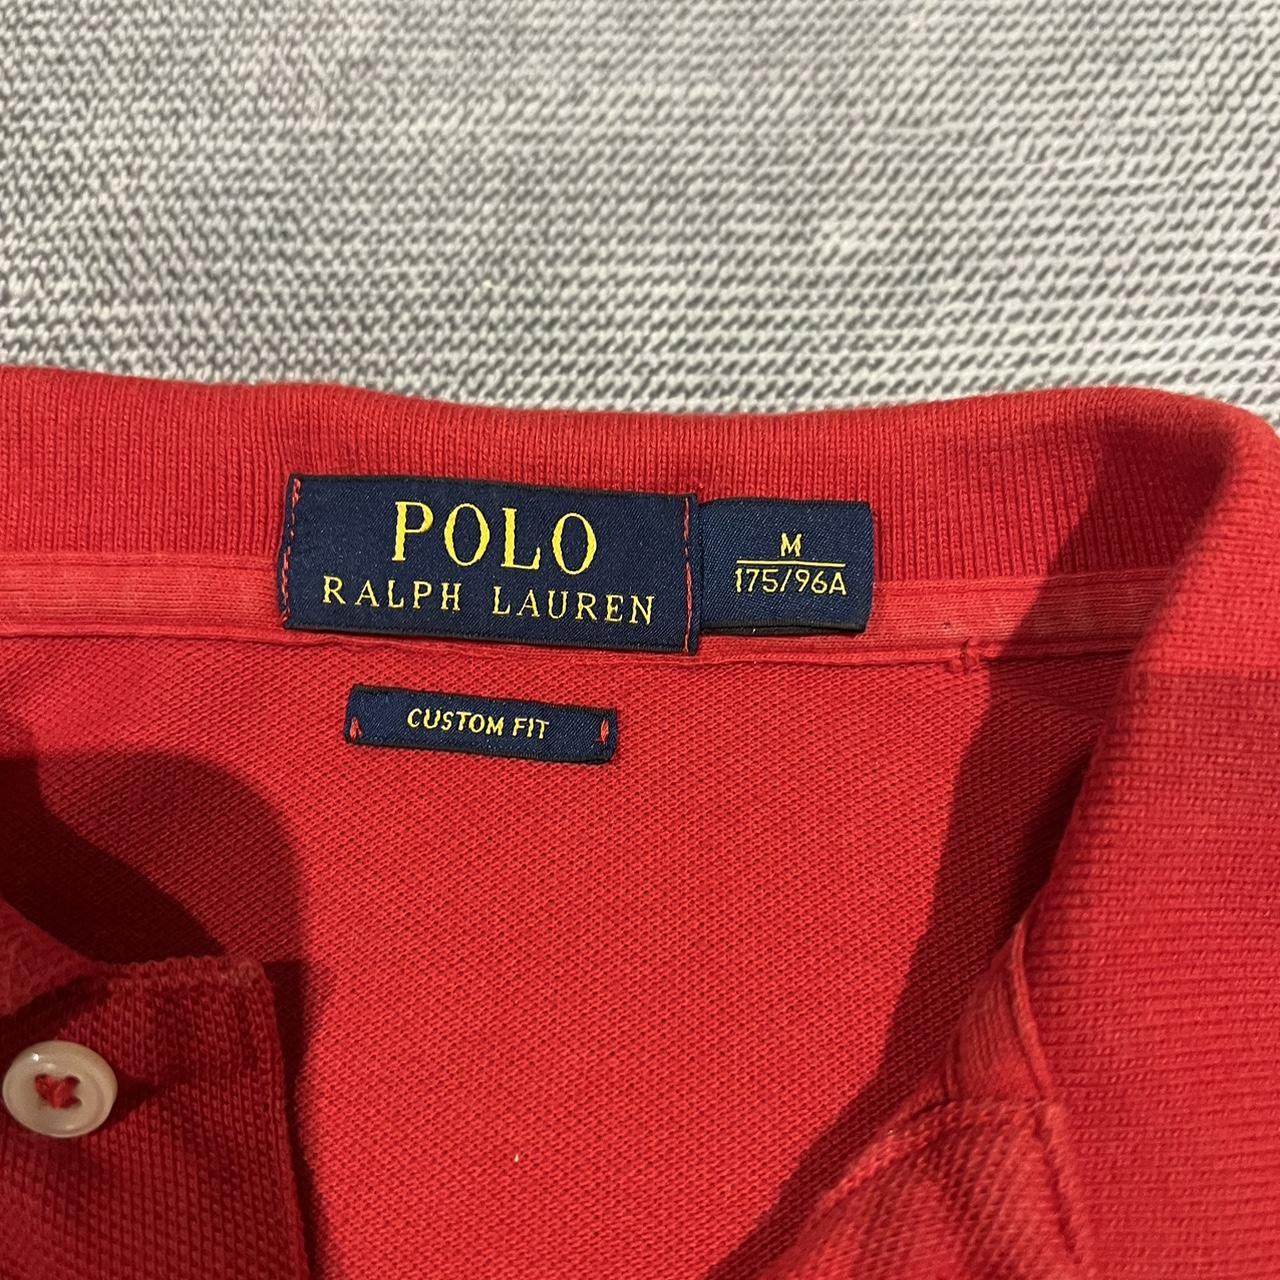 Ralph Lauren Polo Size M Custom Fit *Includes $15... - Depop